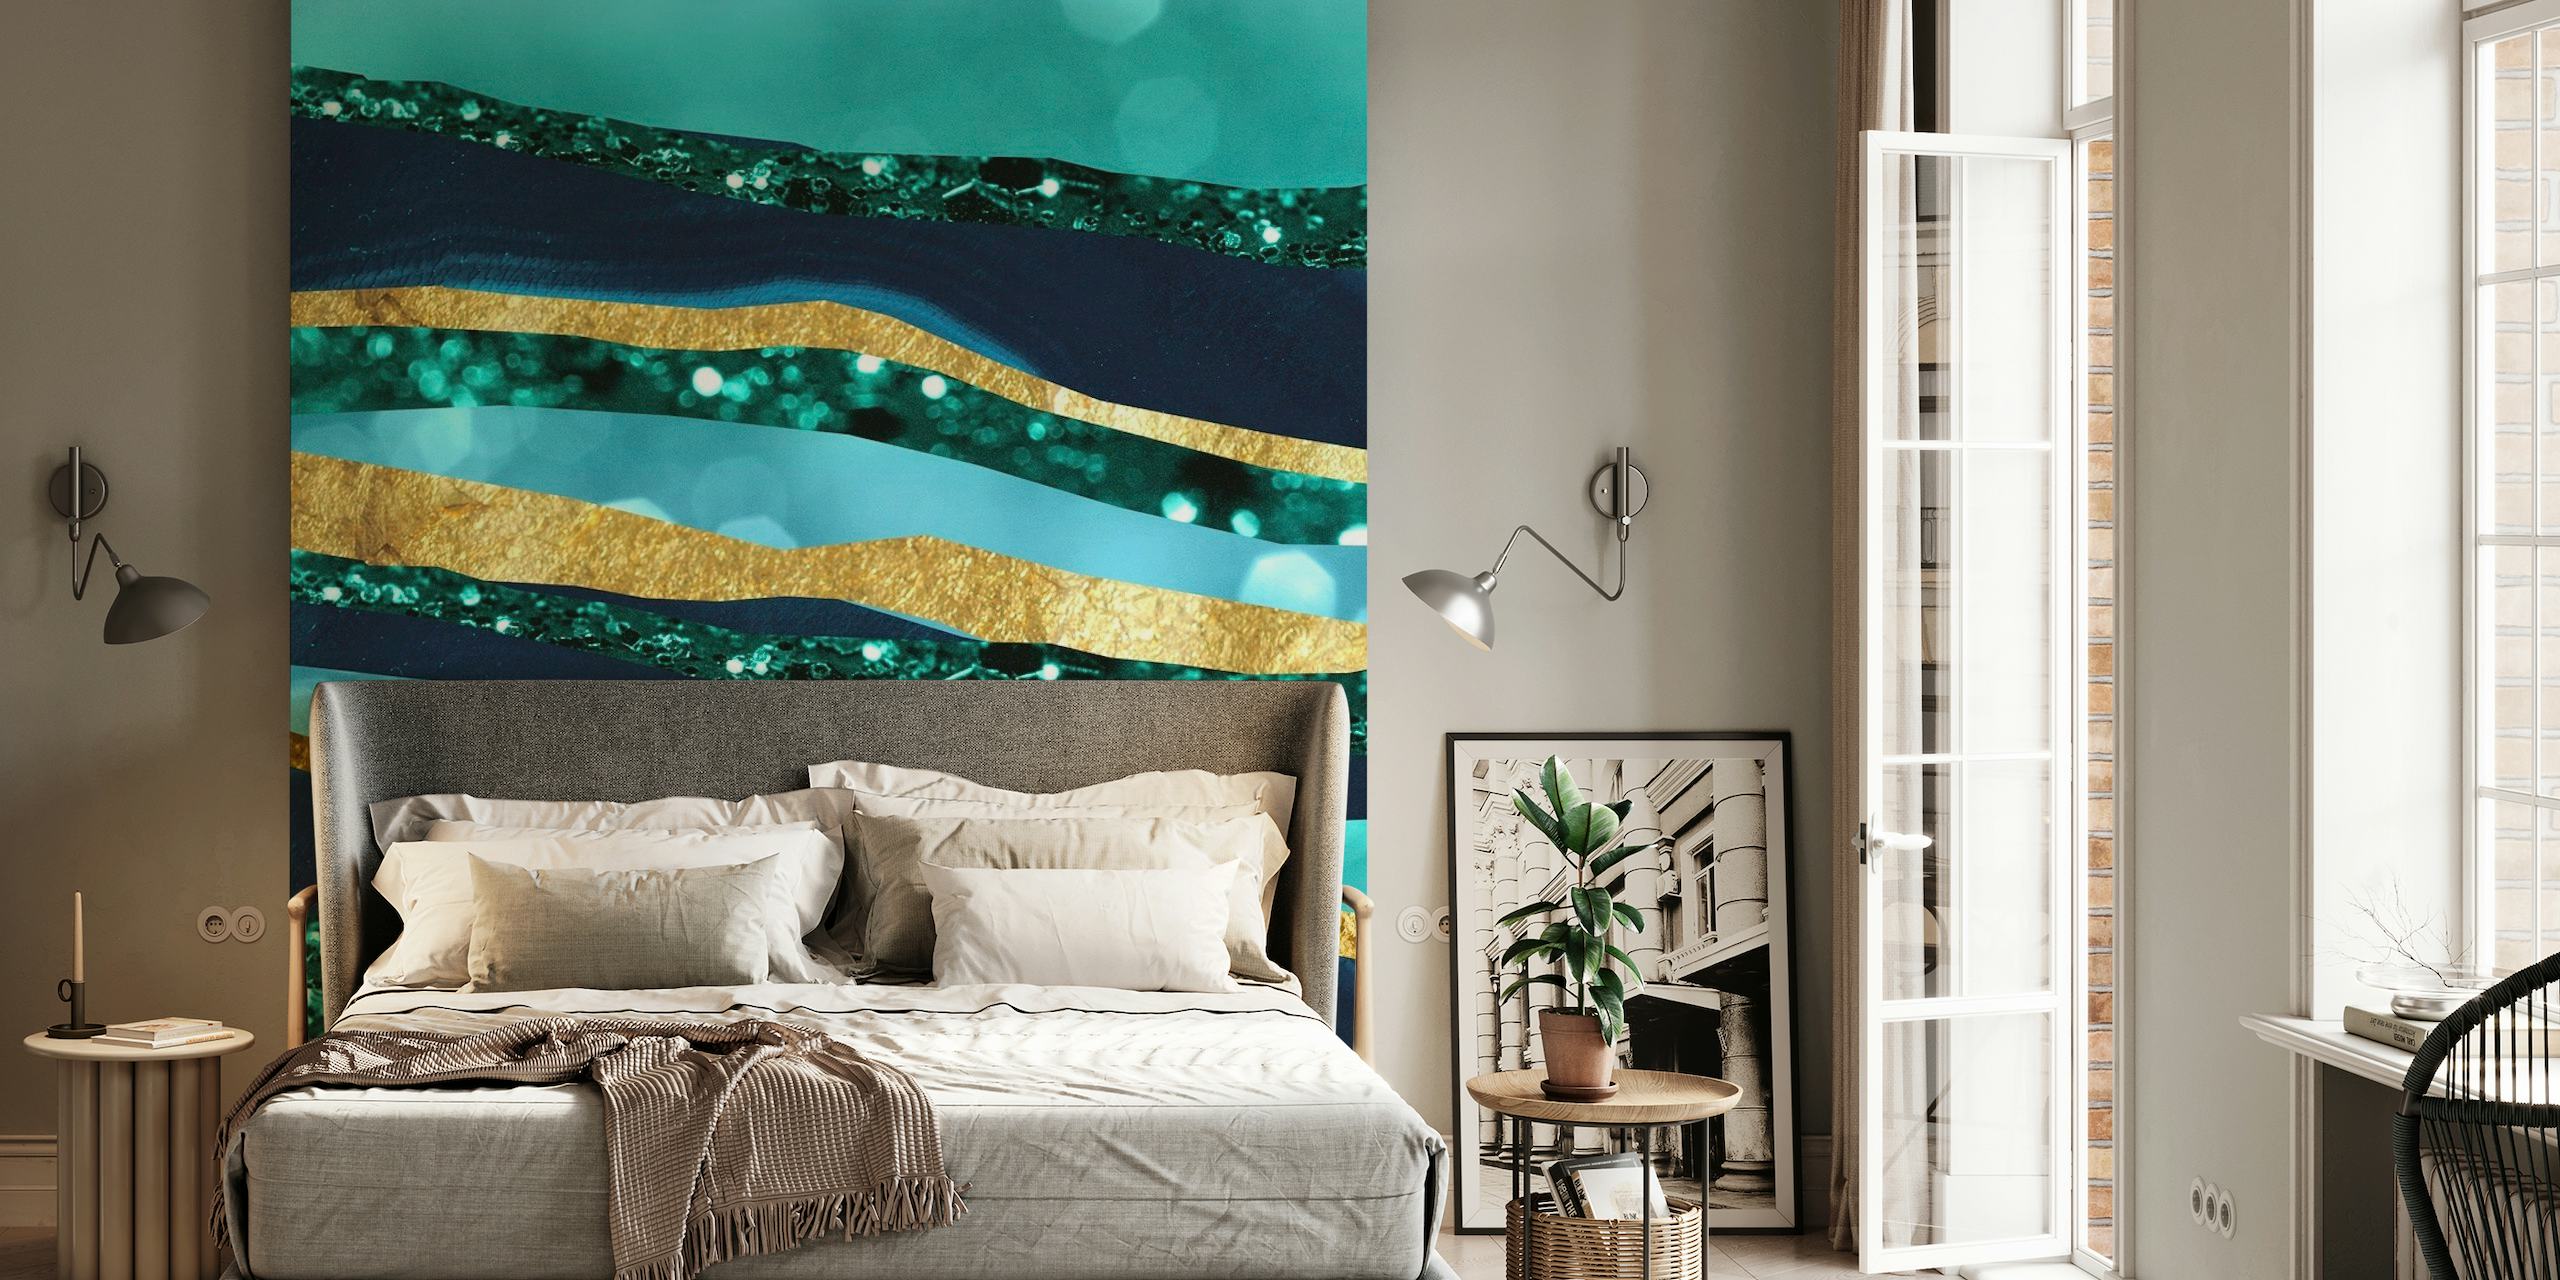 Abstrakteja vuoristokerroksia tavin ja sinisen sävyillä kultaisilla aksenteilla, jotka muistuttavat kuutamoisia heijastuksia vedessä.